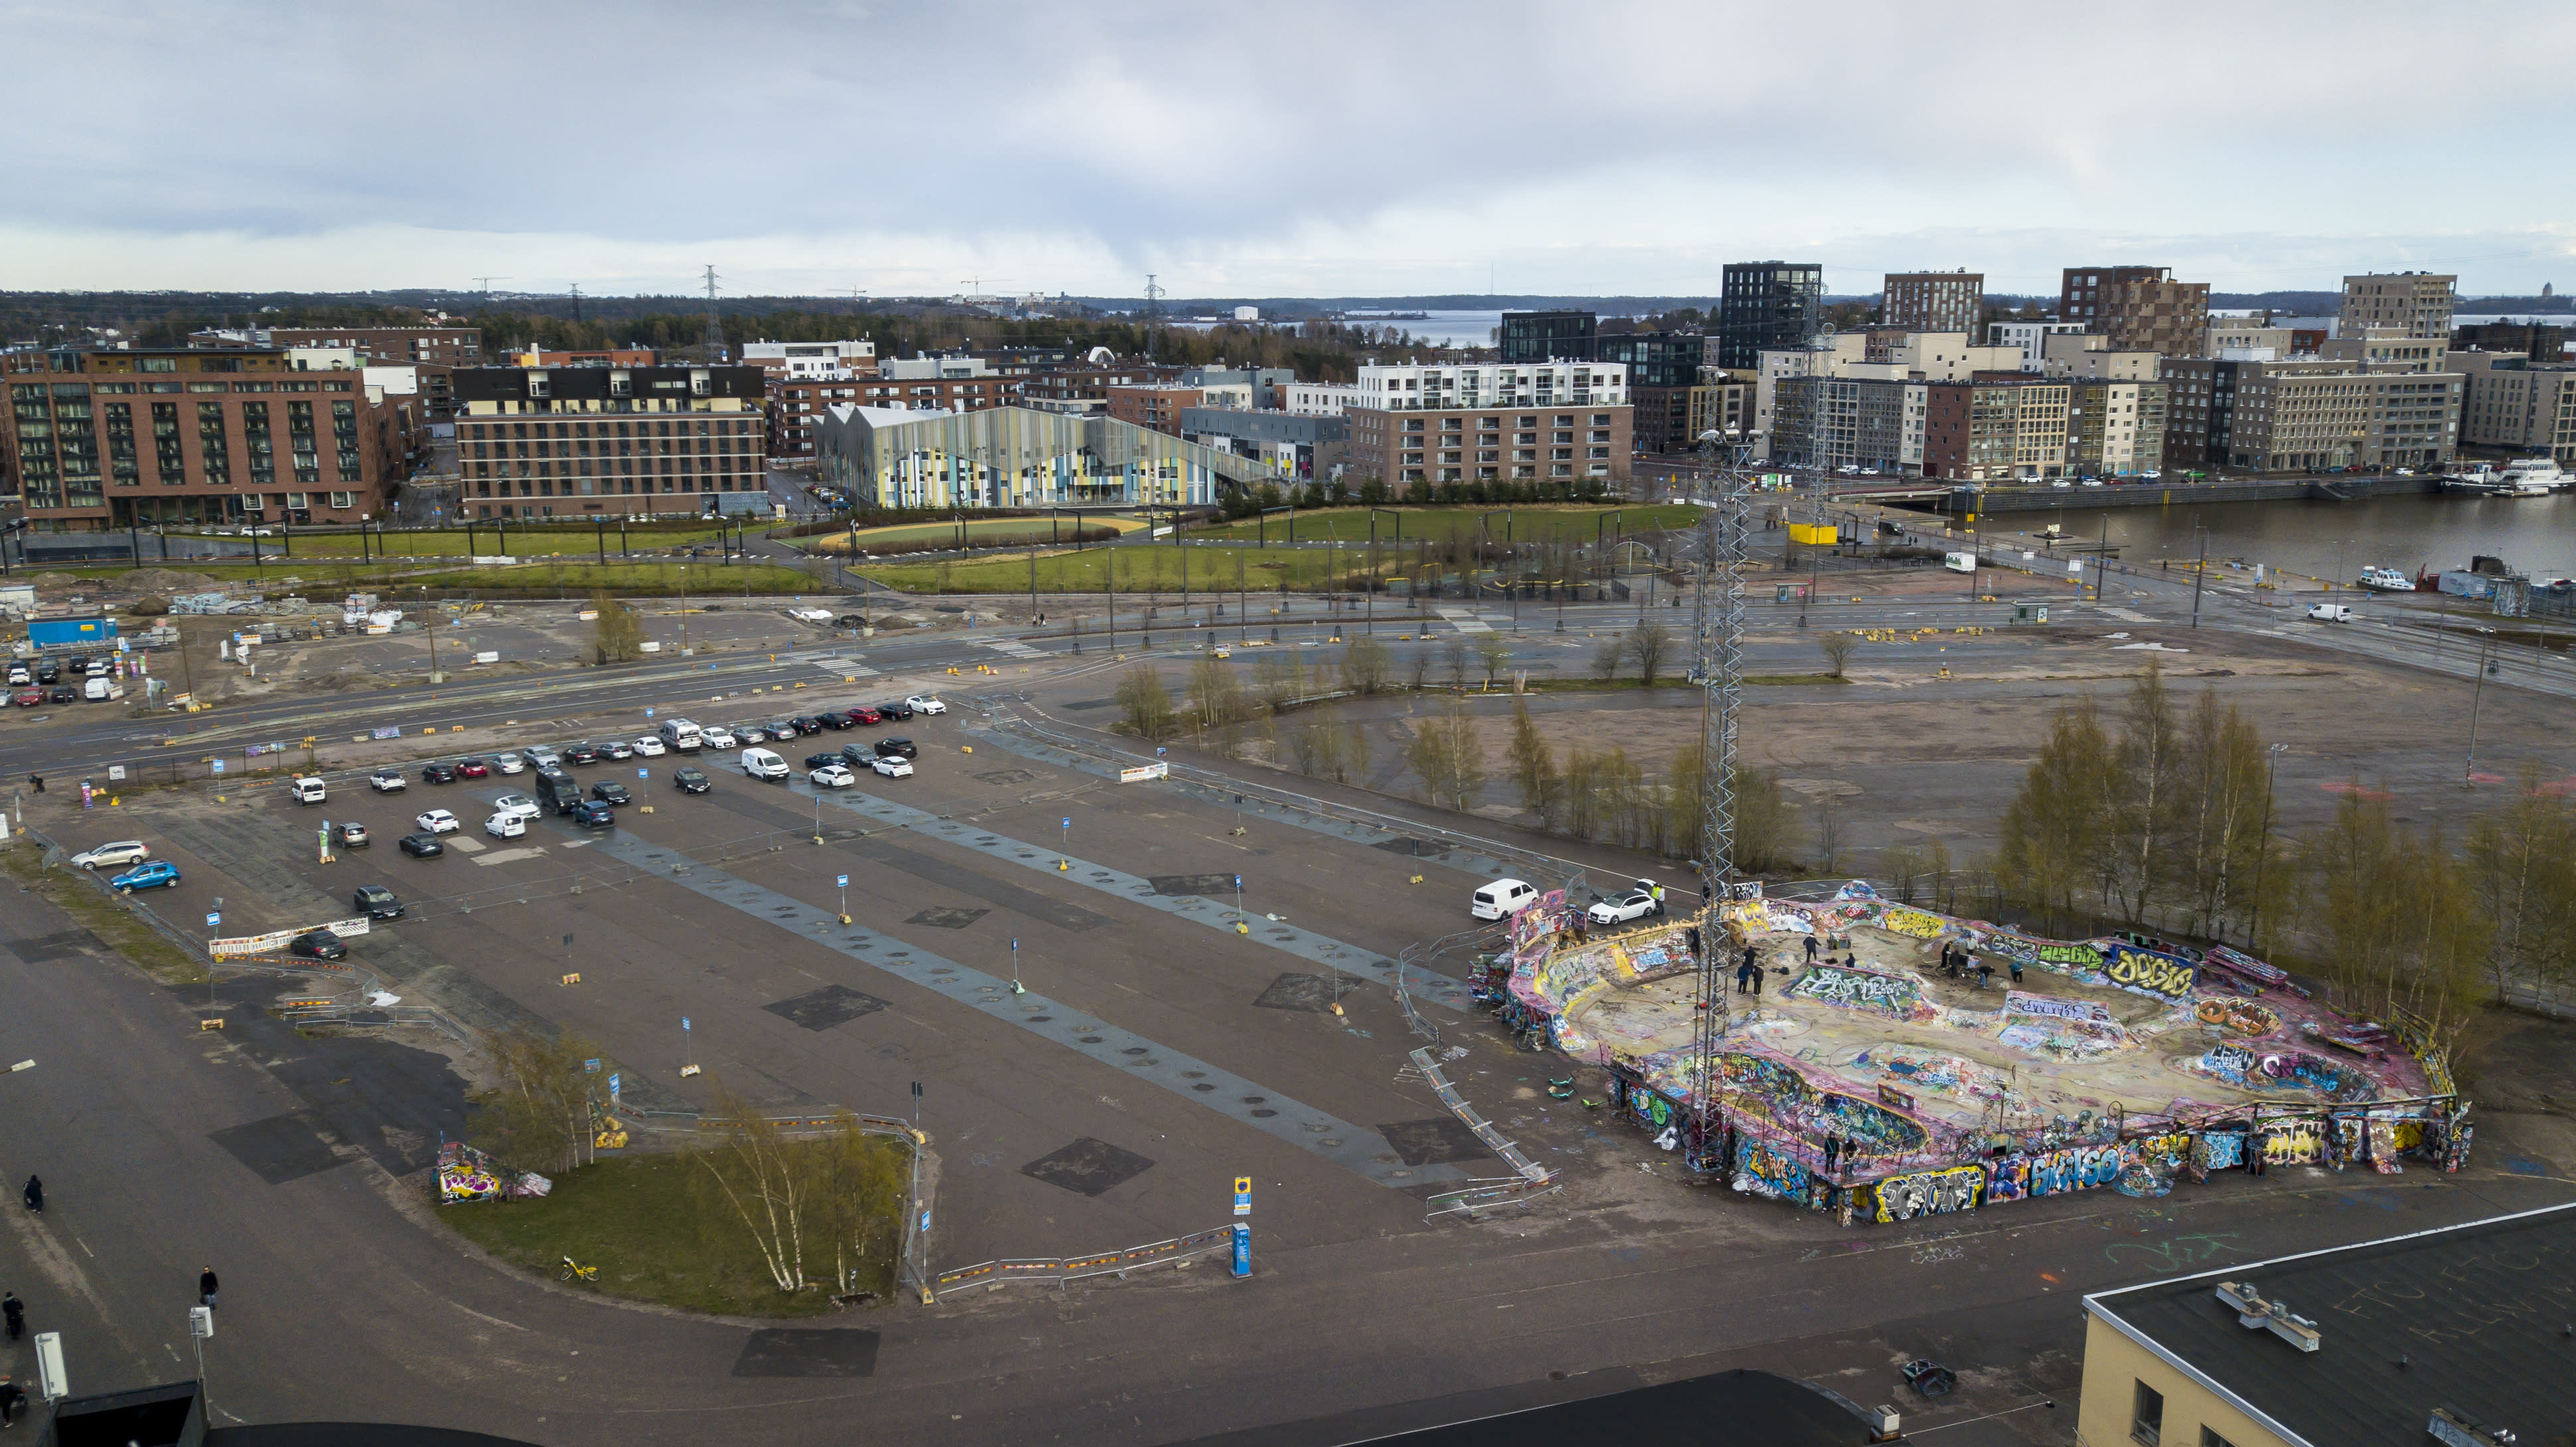 Los planes para un nuevo centro de eventos alejan a los patinadores del popular parque de Helsinki